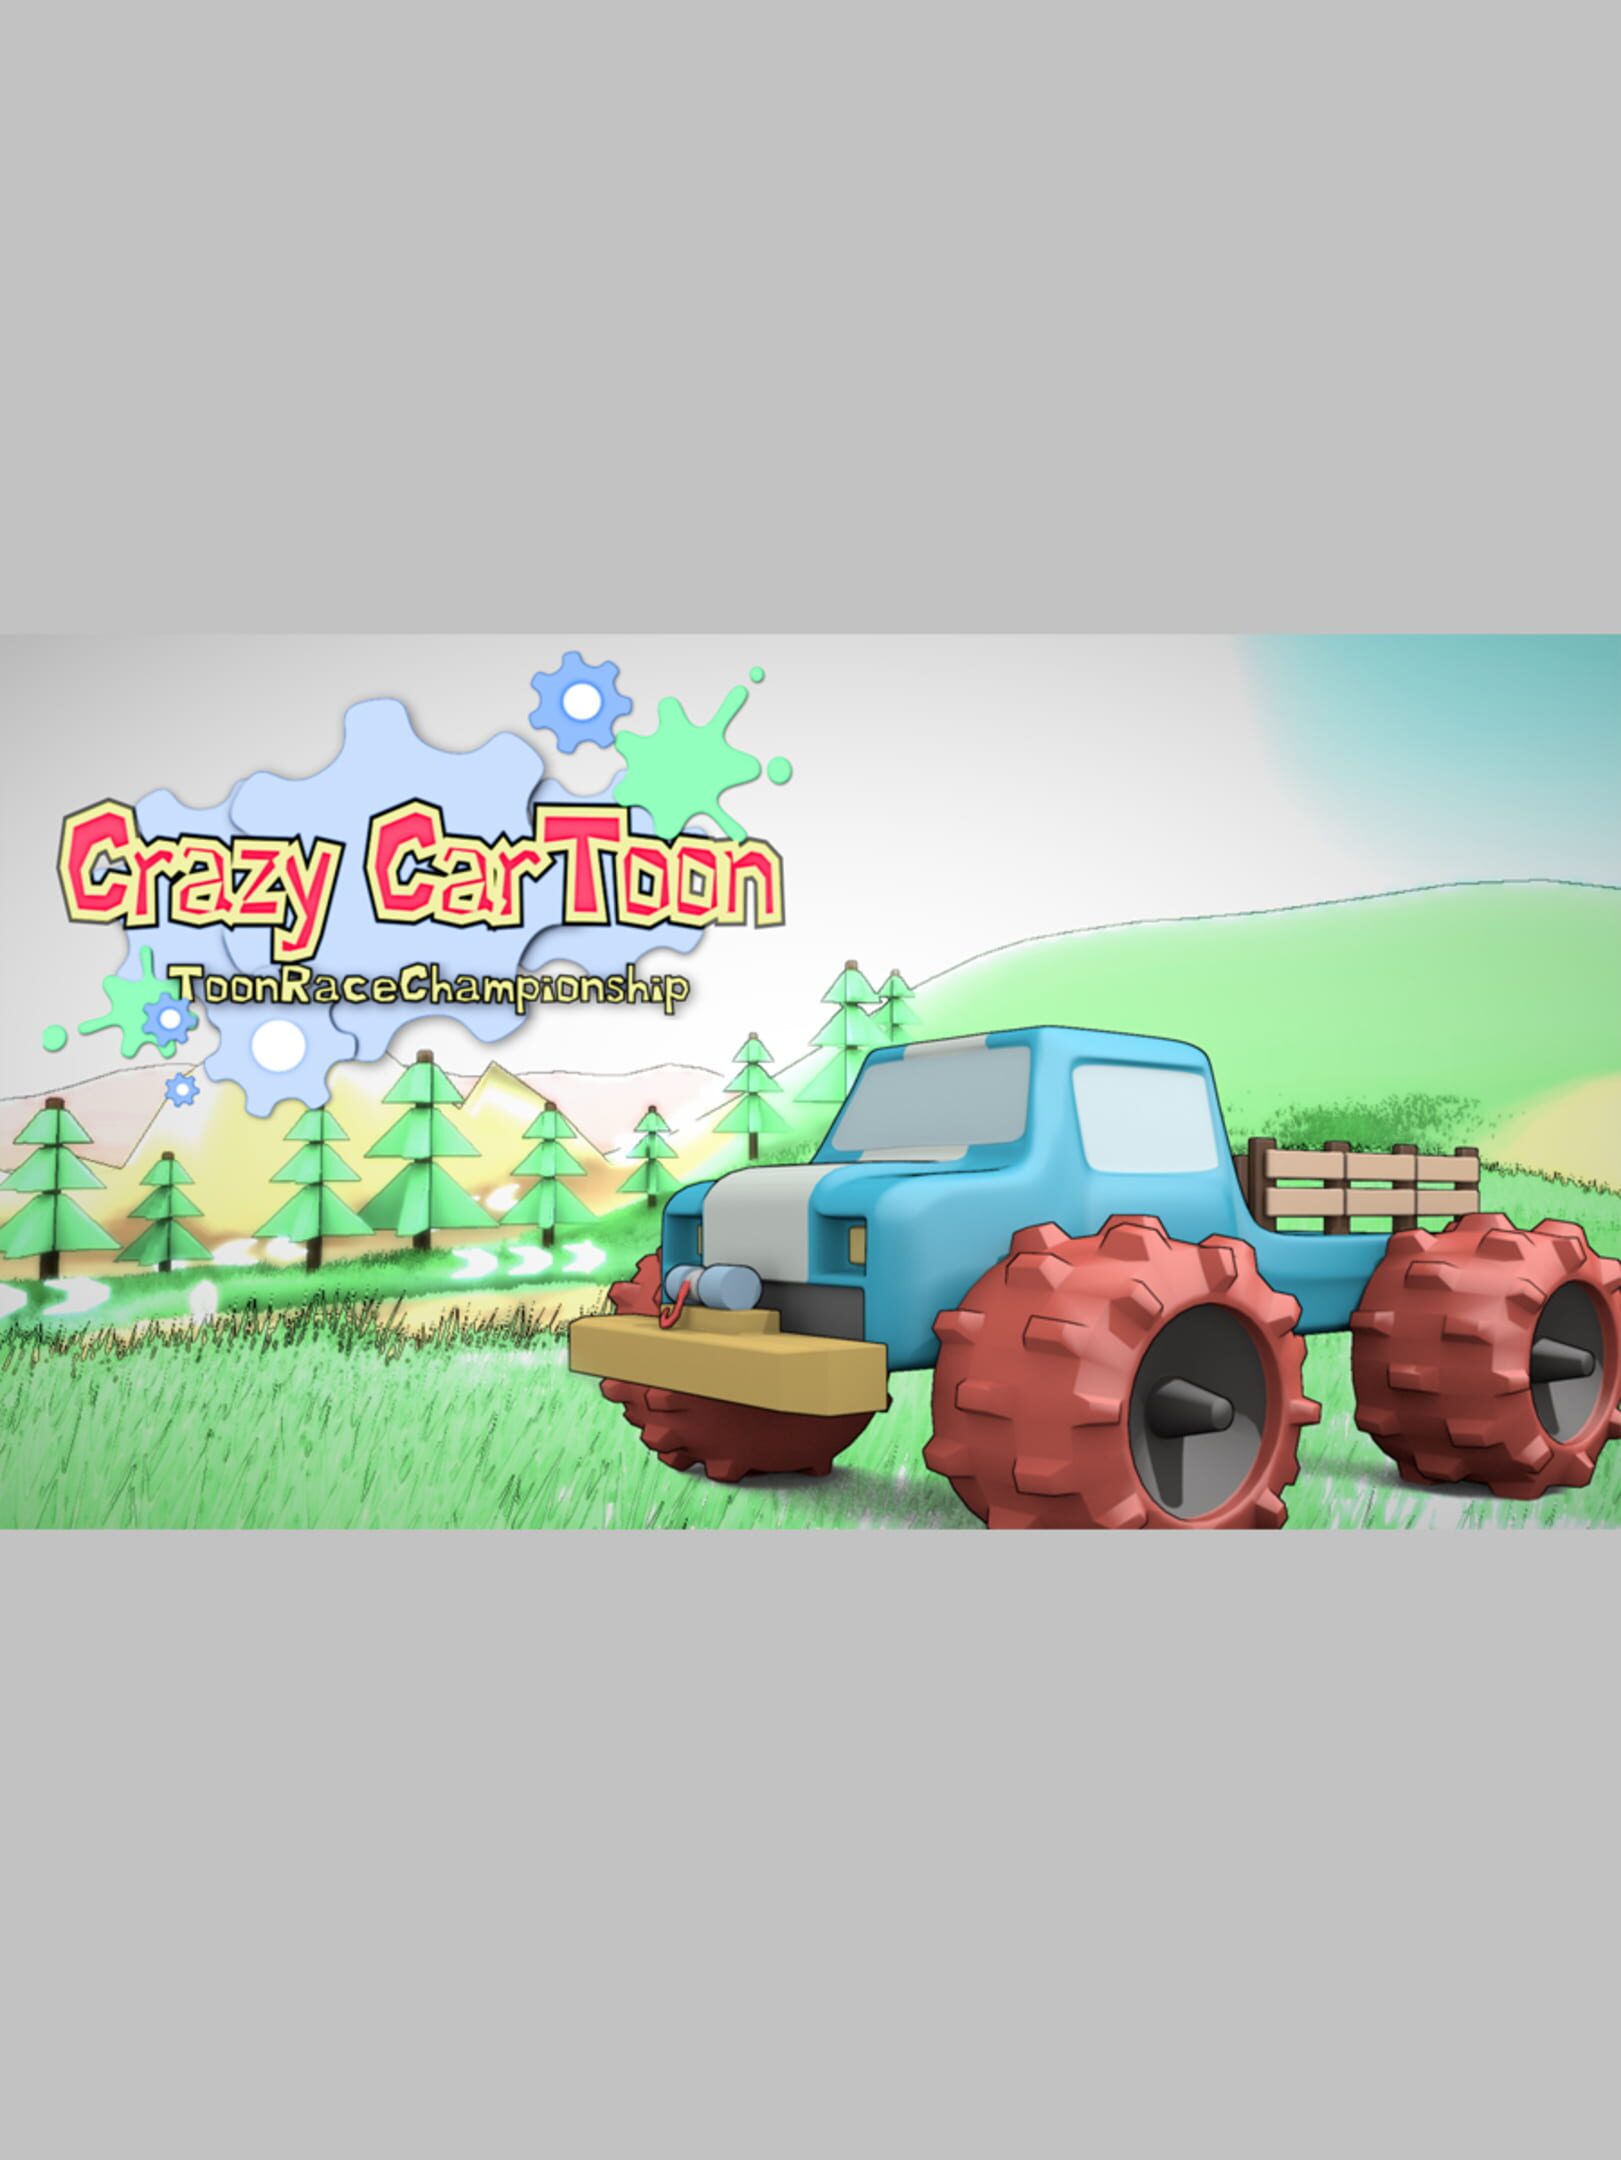 Crazy CarToon | Stash - Games tracker